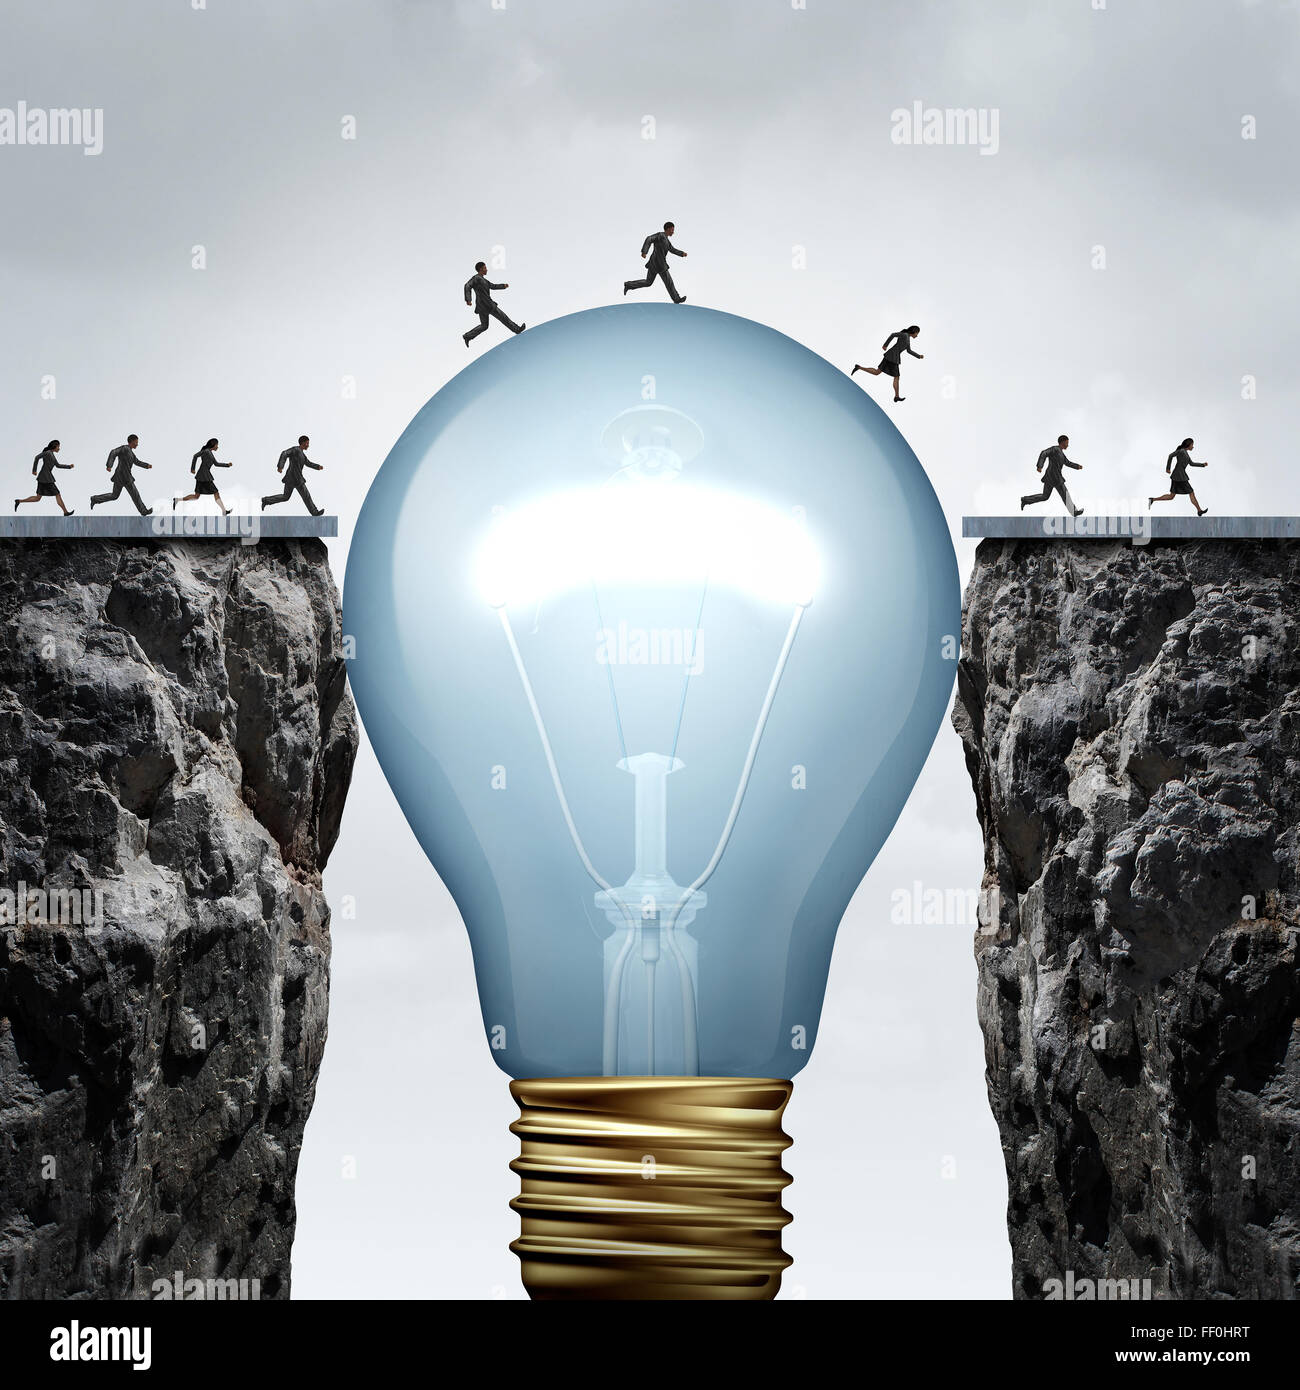 La créativité idée commerciale solution comme un groupe de personnes sur deux rochers étant reliés par une ampoule géante combler l'écart et la création d'un pont pour permettre un passage vers le succès comme une métaphore de la pensée cretive.. Banque D'Images